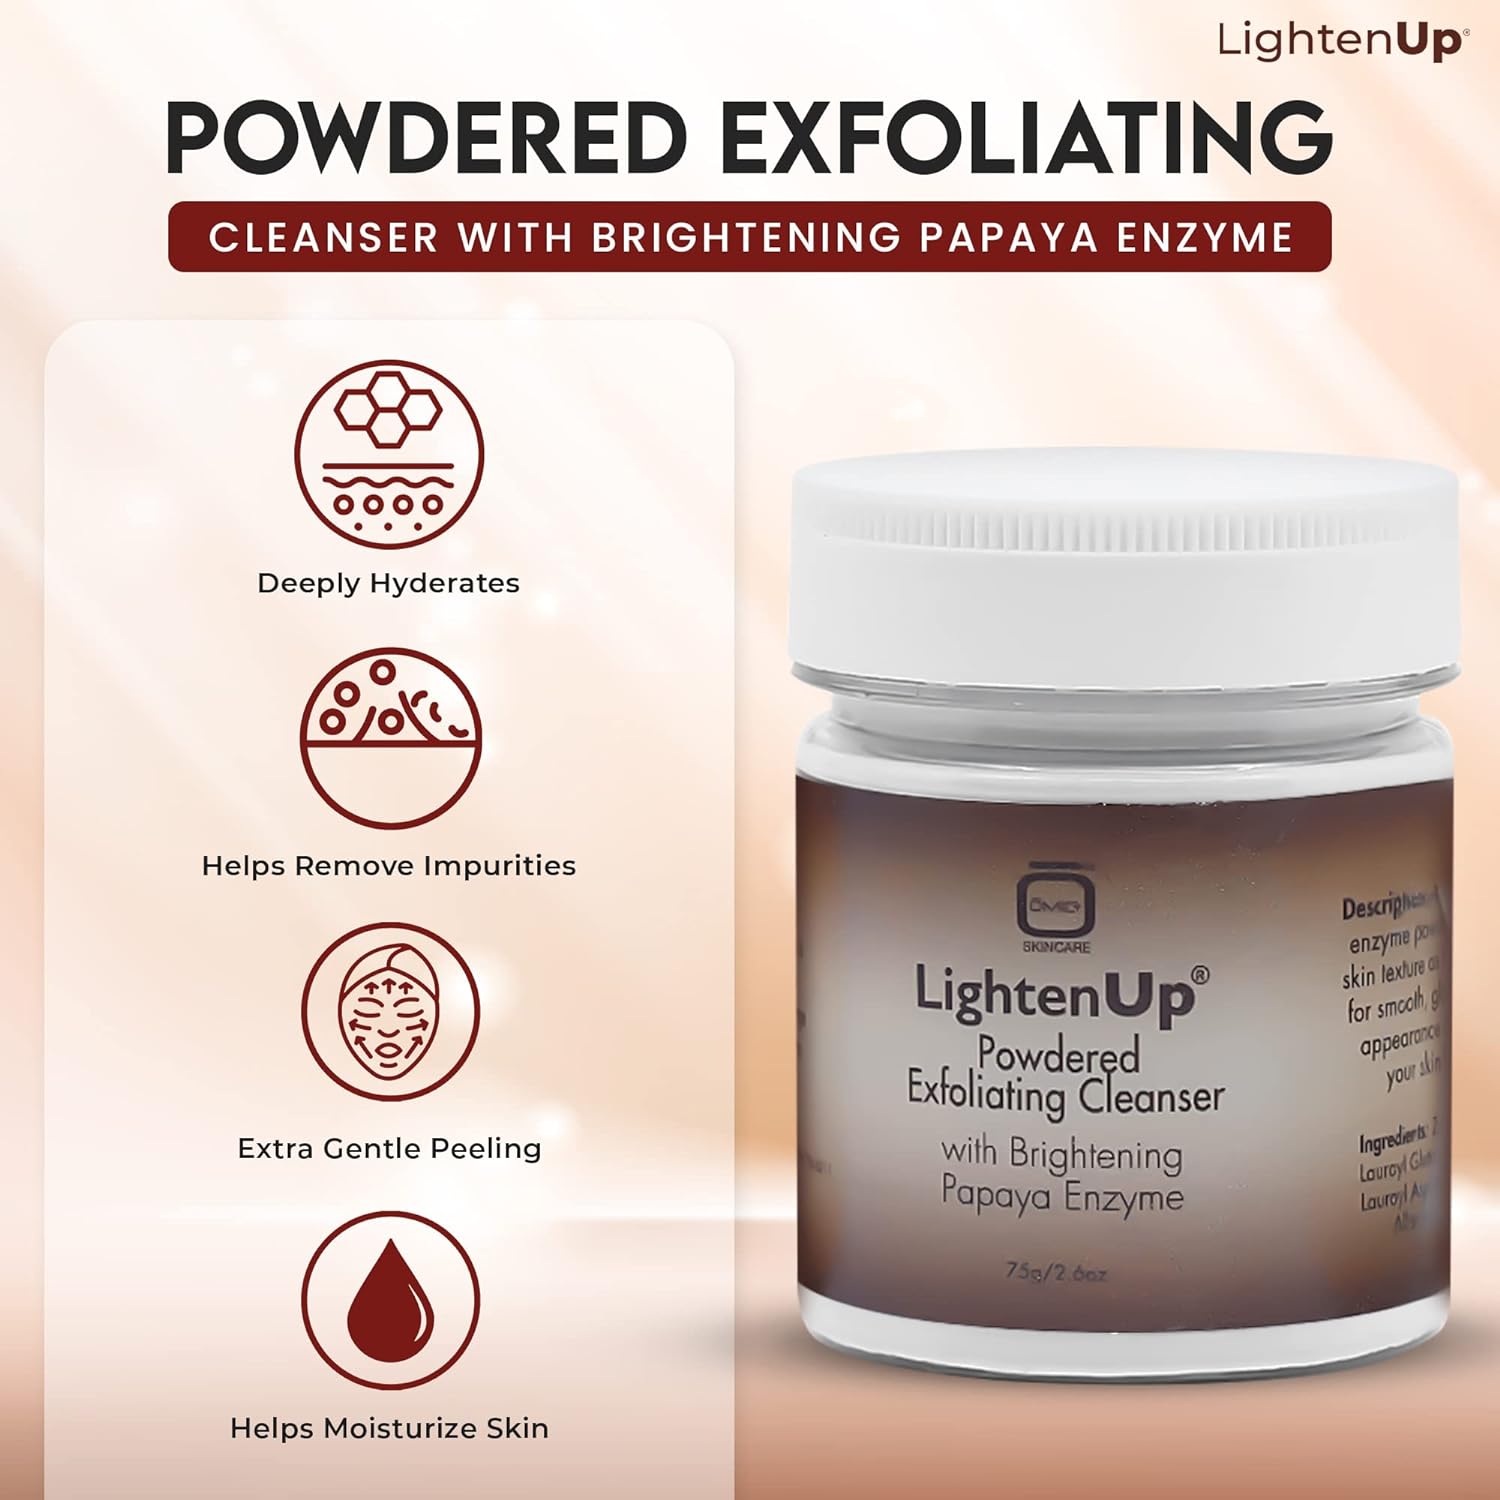 LightenUp Plus Powdered Exfoliating Cleanser 75g LightenUp - Mitchell Brands - Skin Lightening, Skin Brightening, Fade Dark Spots, Shea Butter, Hair Growth Products